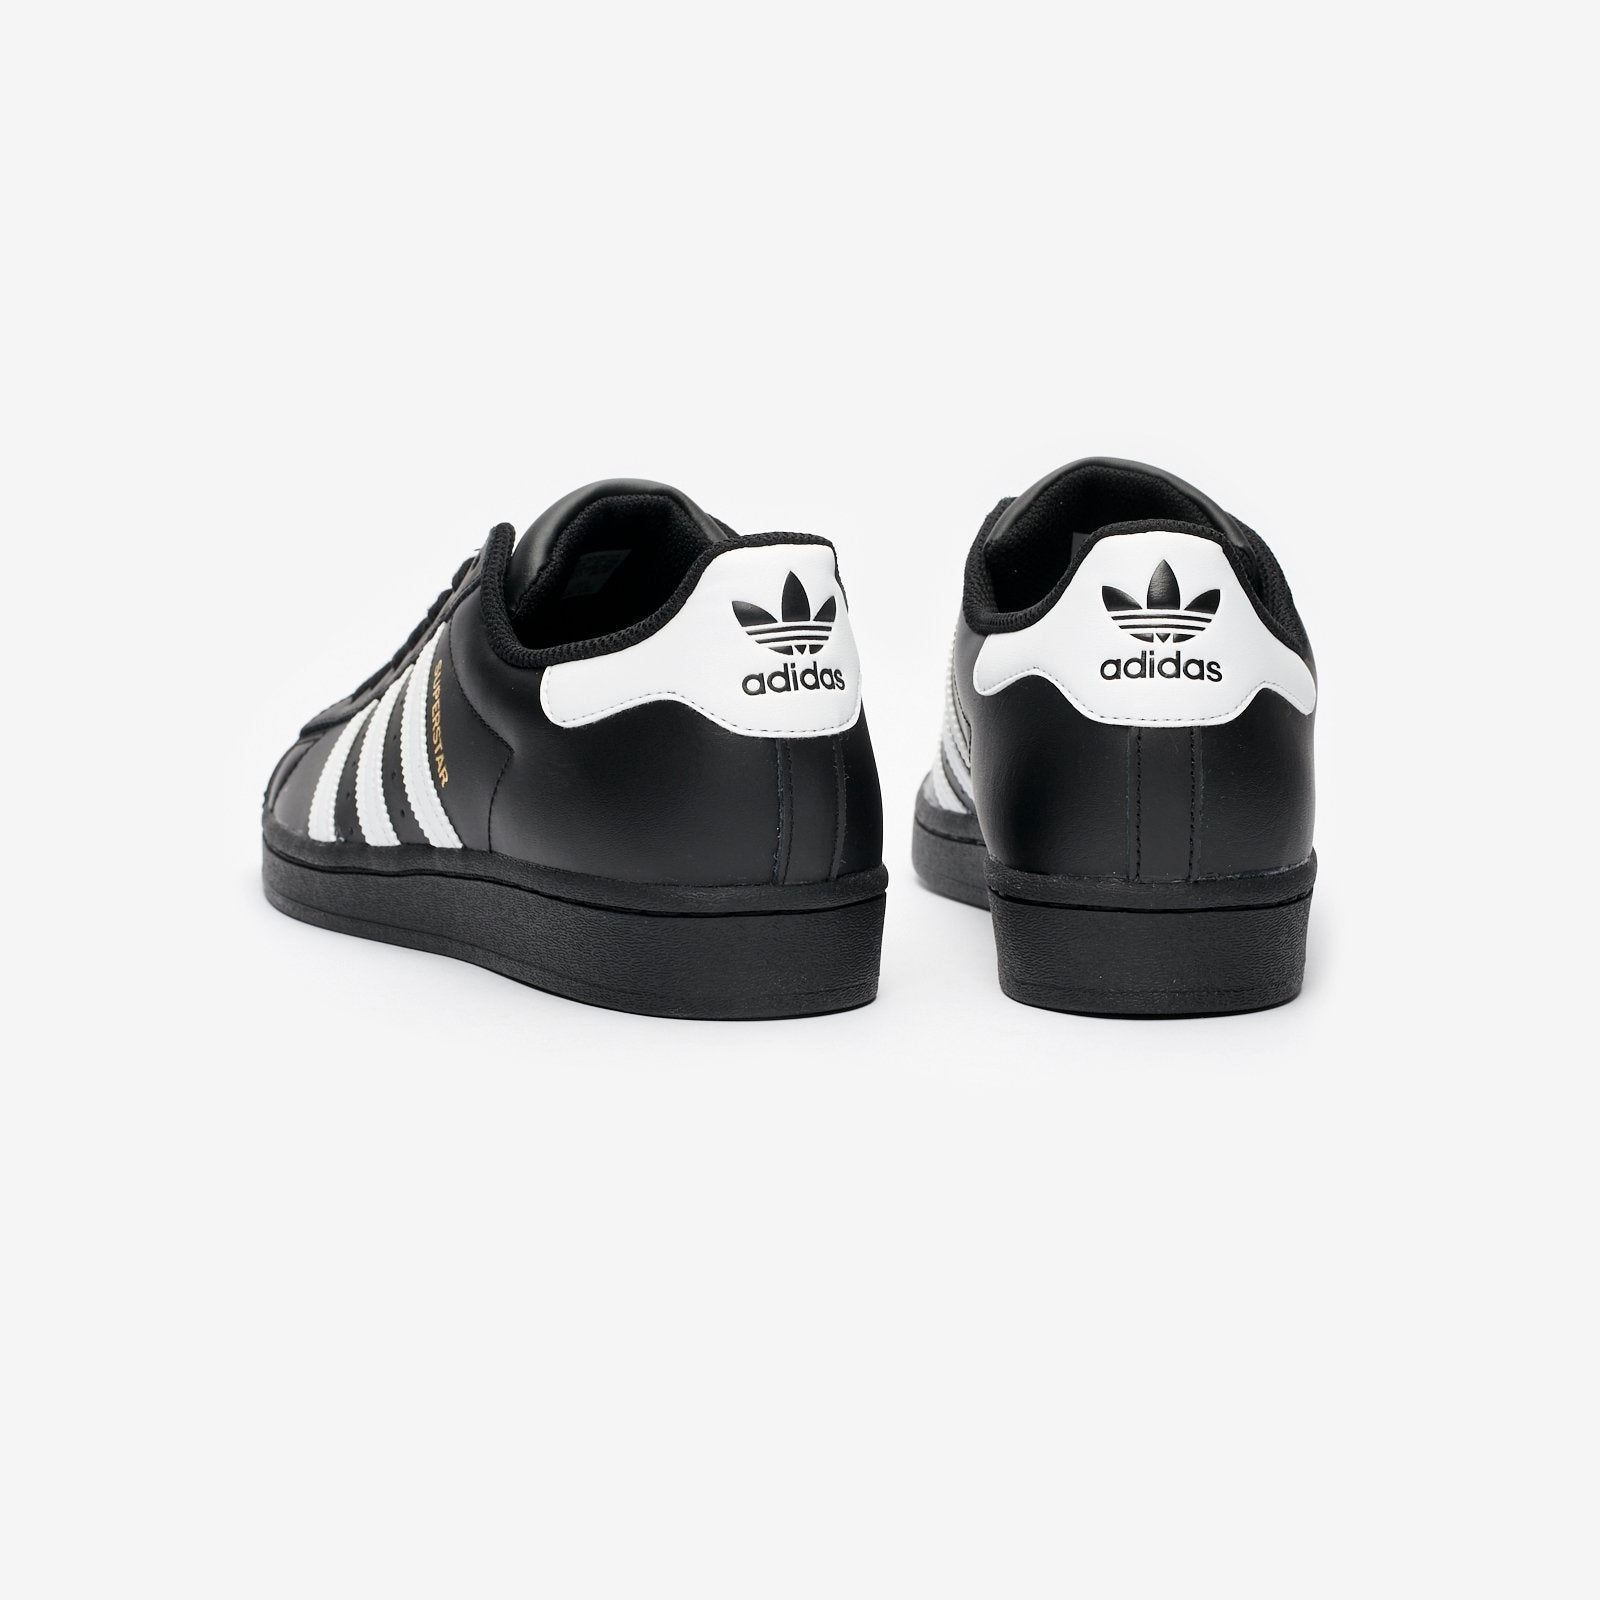 adidas Superstar (Black / White) EG4959 - Allike Store